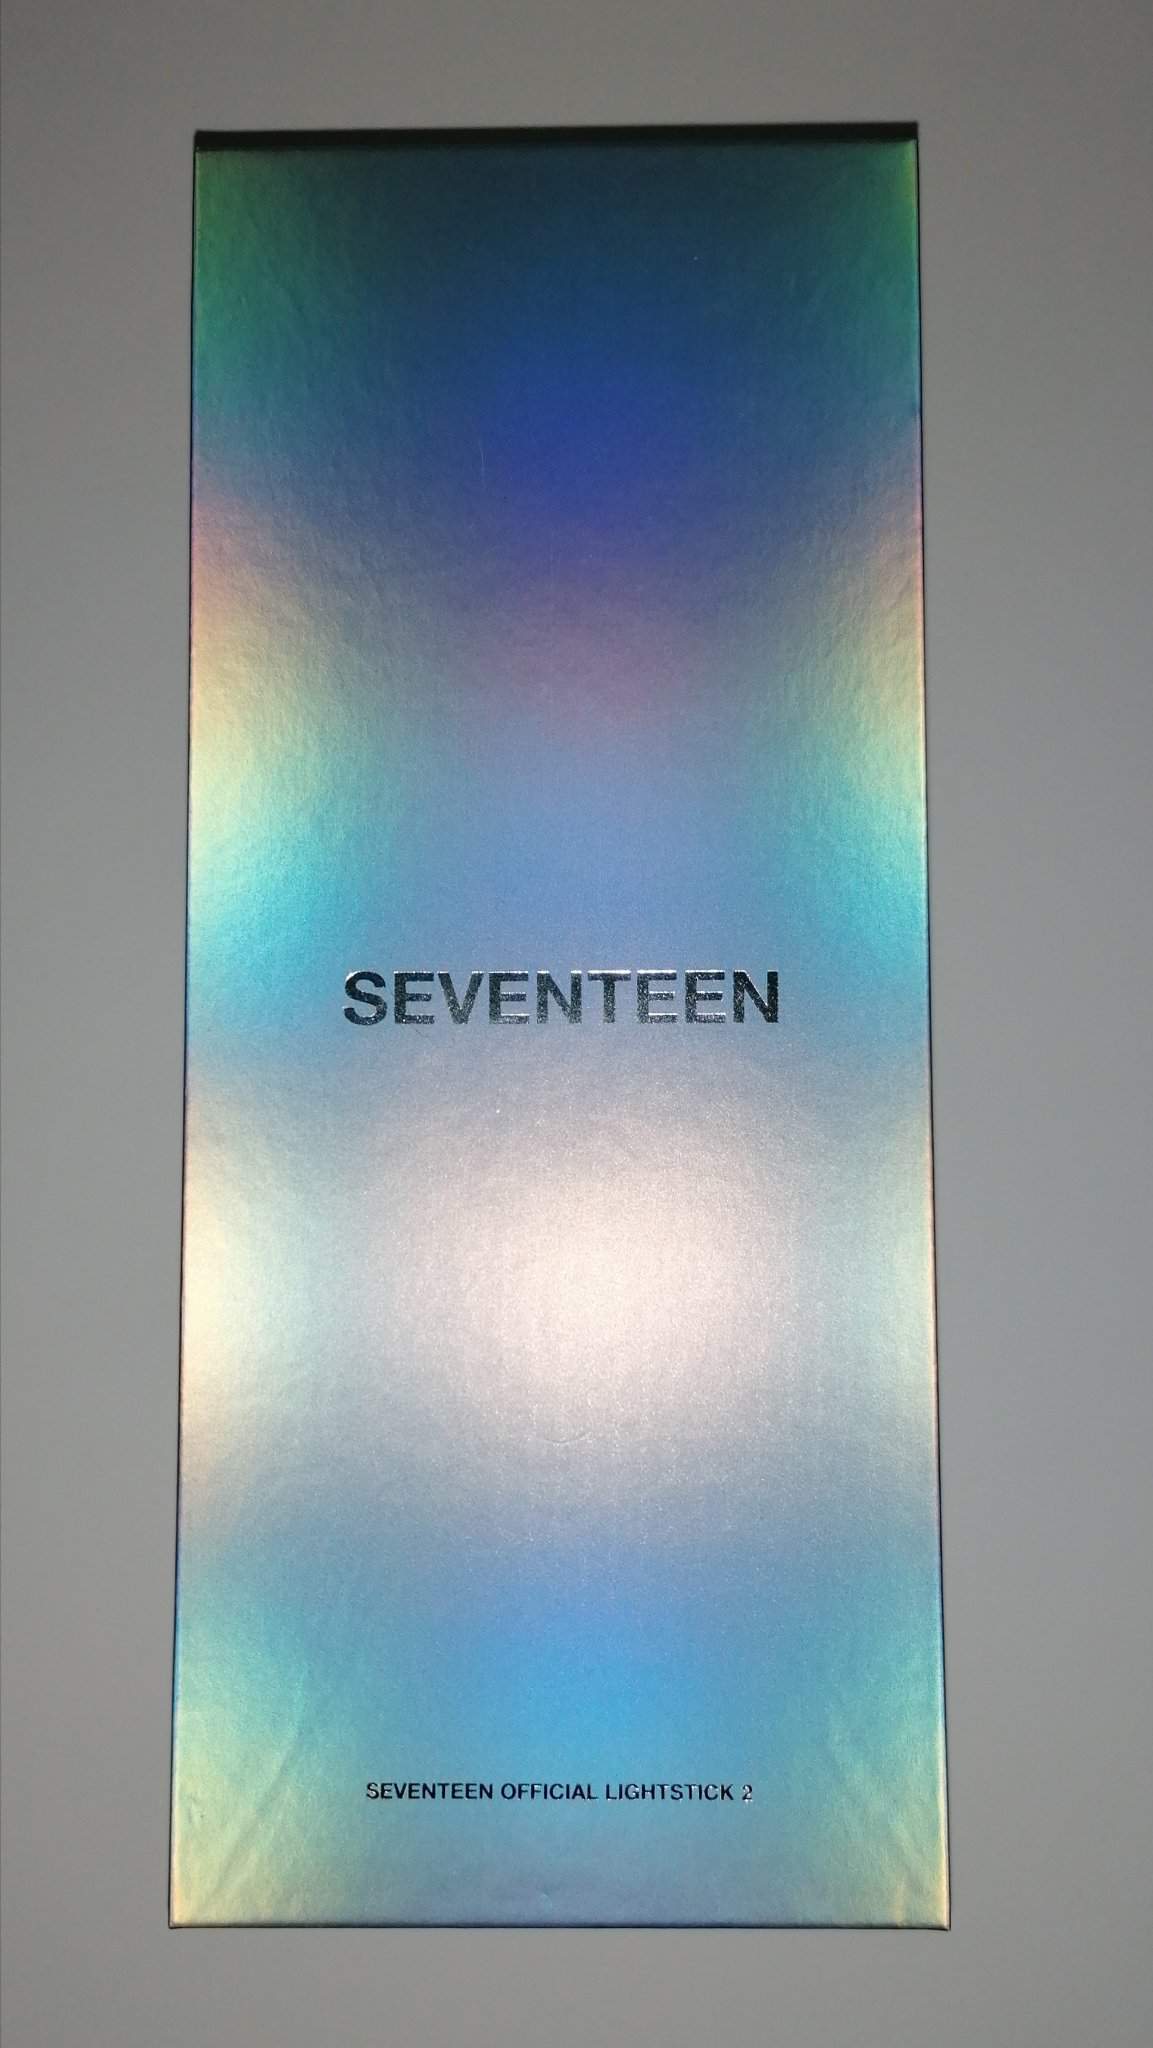 Seventeen Lightstick Ver 2 : Seventeen Official Lightstick Ver2